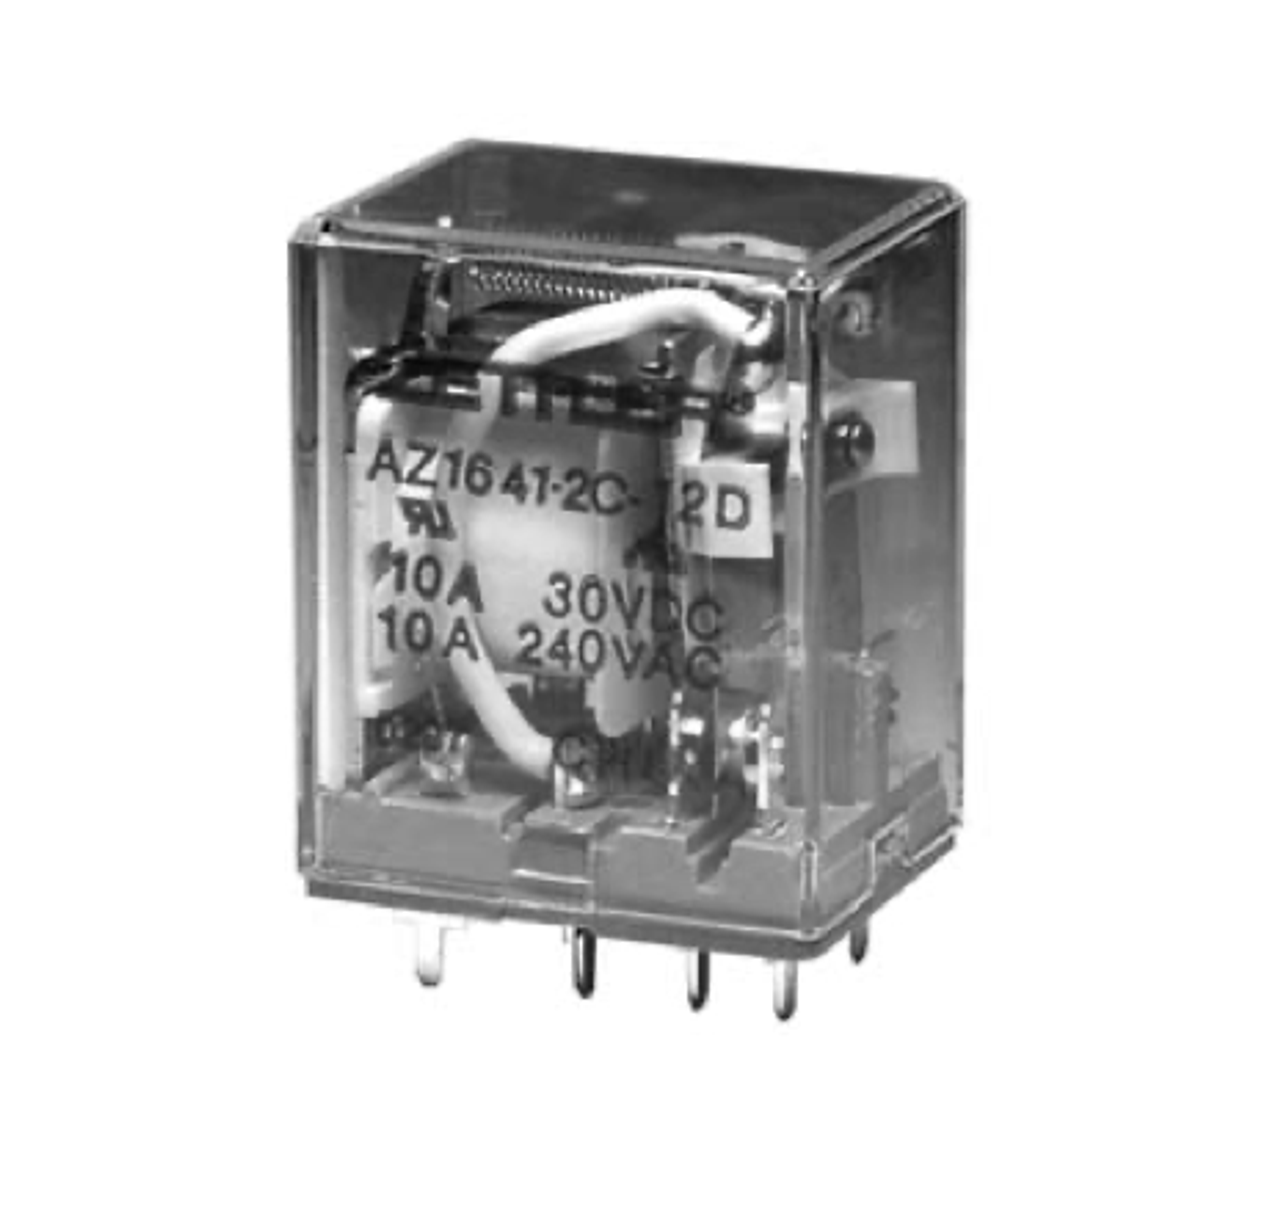 American Zettler AZ1641-2CT-12A Power Relay